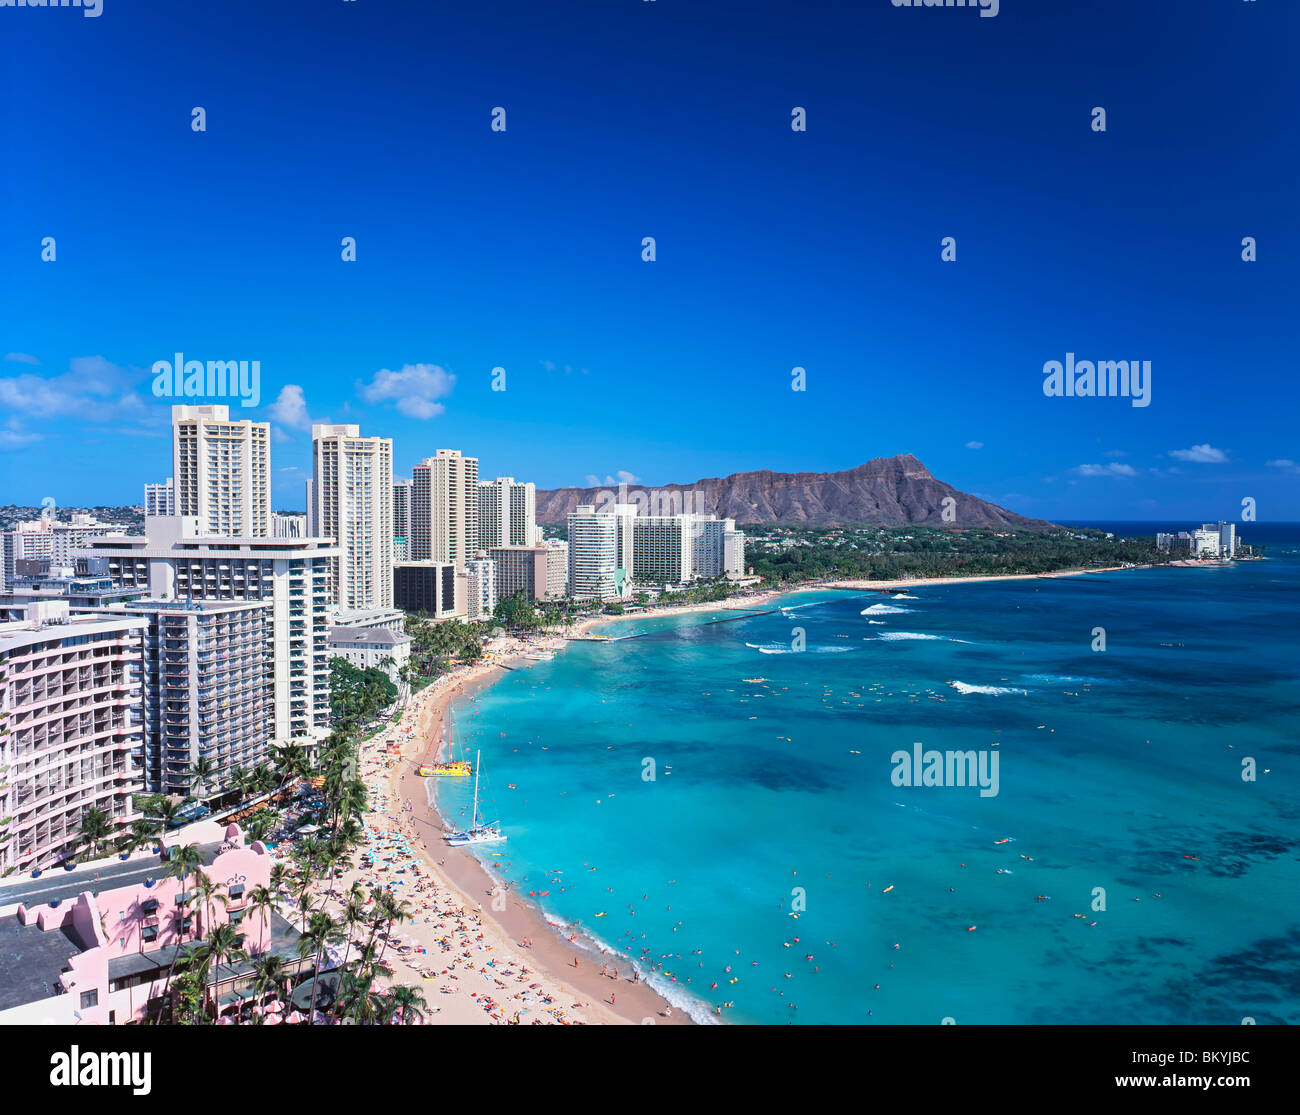 La plage de Waikiki Hawaii tropical et Diamond Head palm tree Banque D'Images